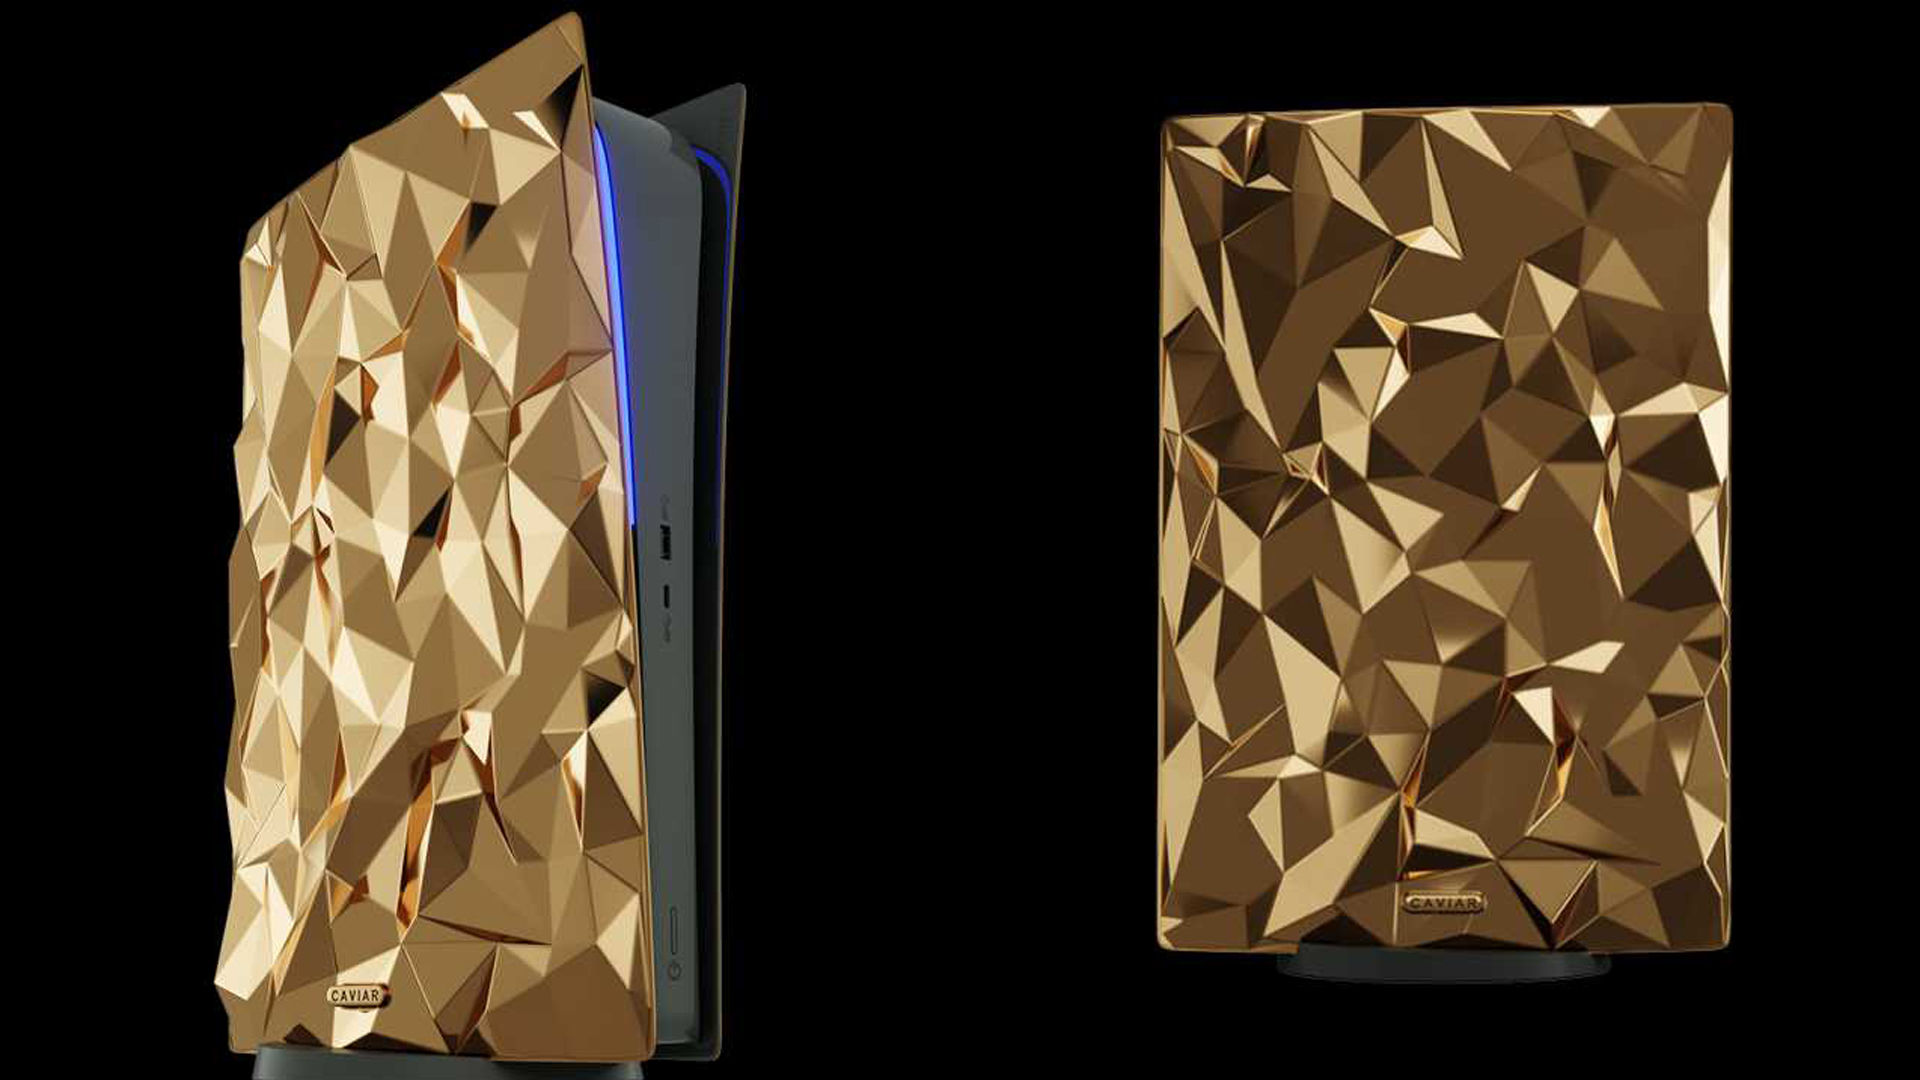 20 Kg Altın Kaplı PlayStation 5 Tanıtıldı! Golden Rock